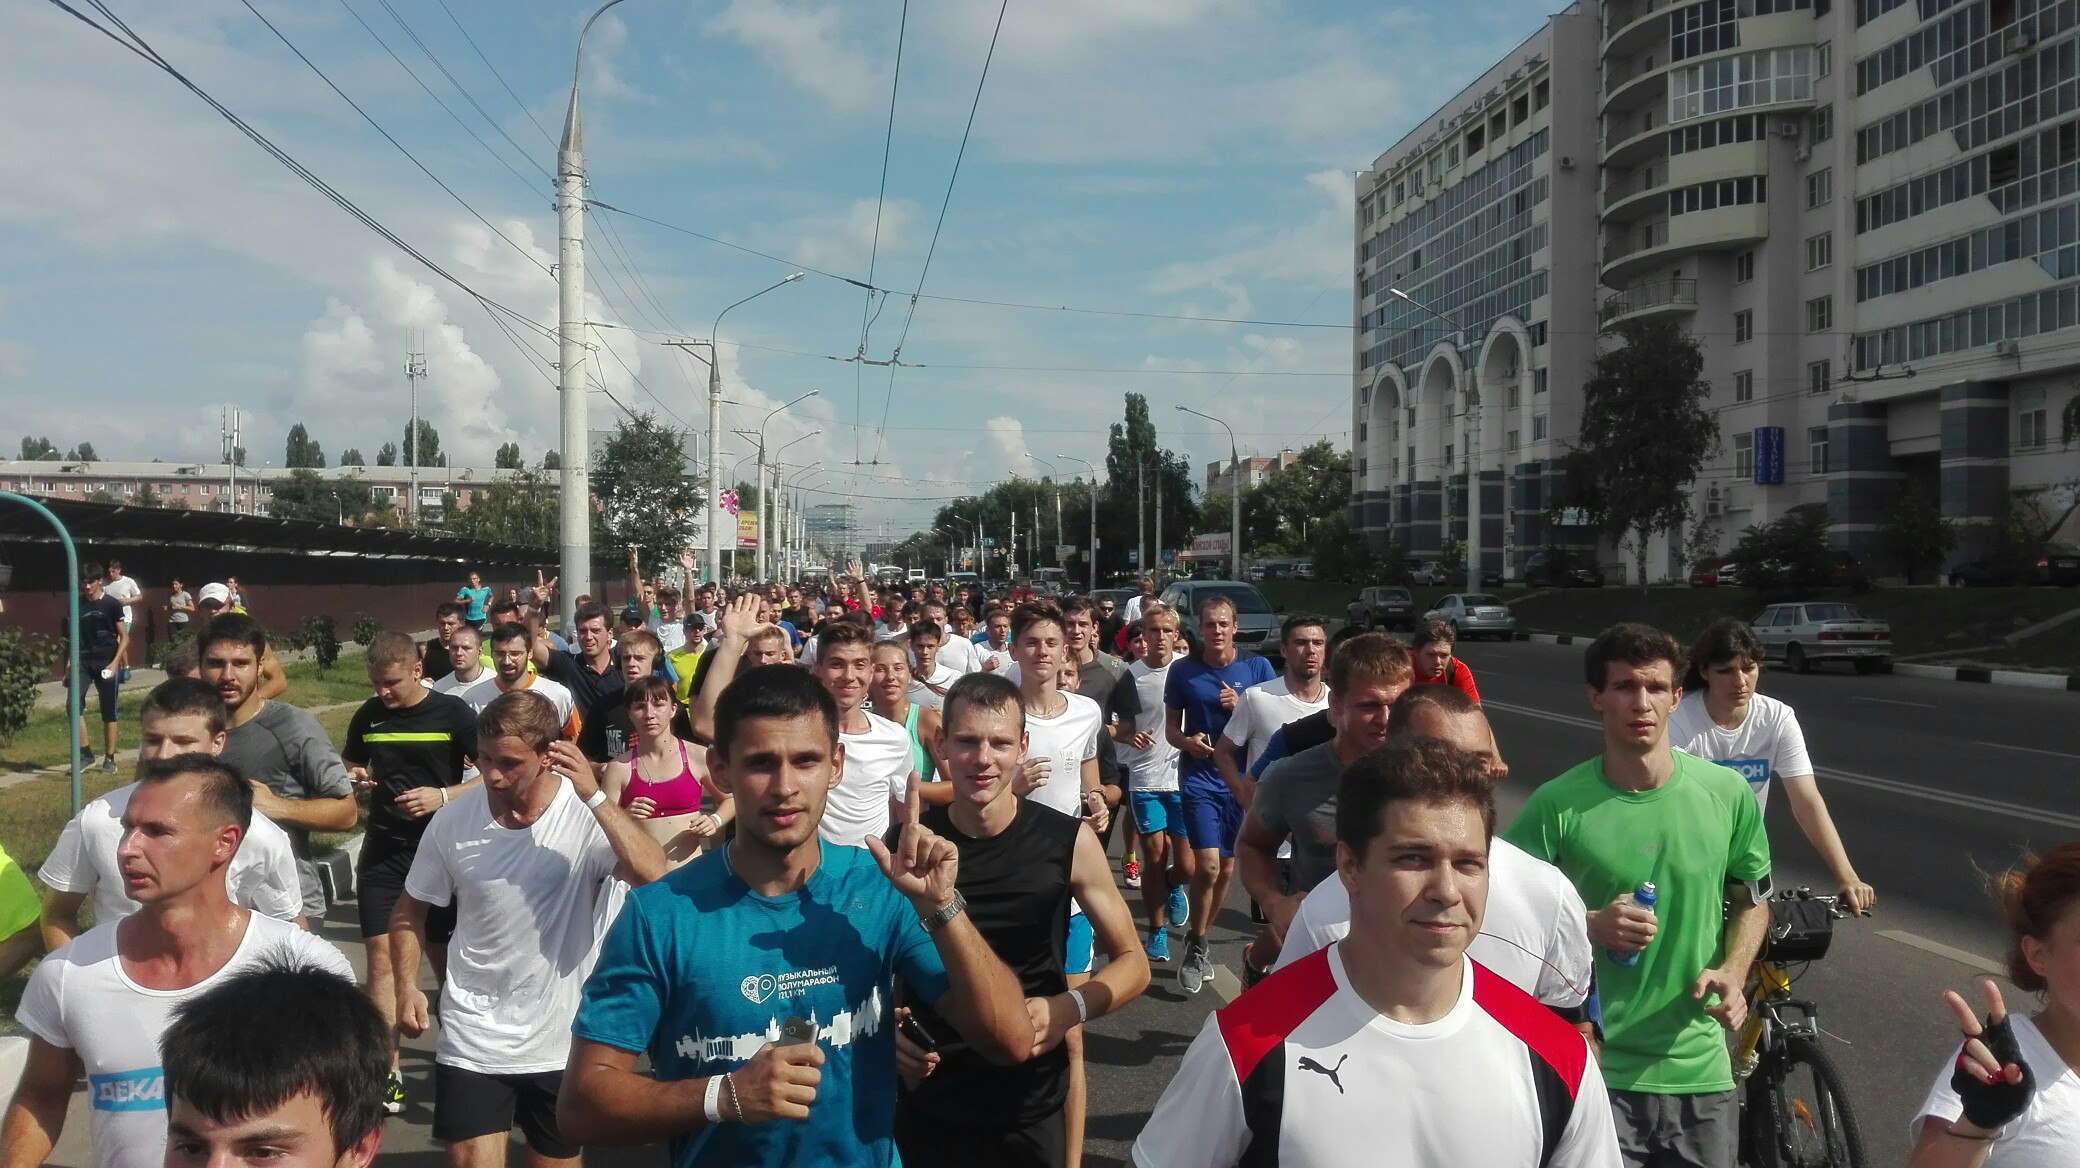 Бег на место: как в Воронеже появились городские марафоны